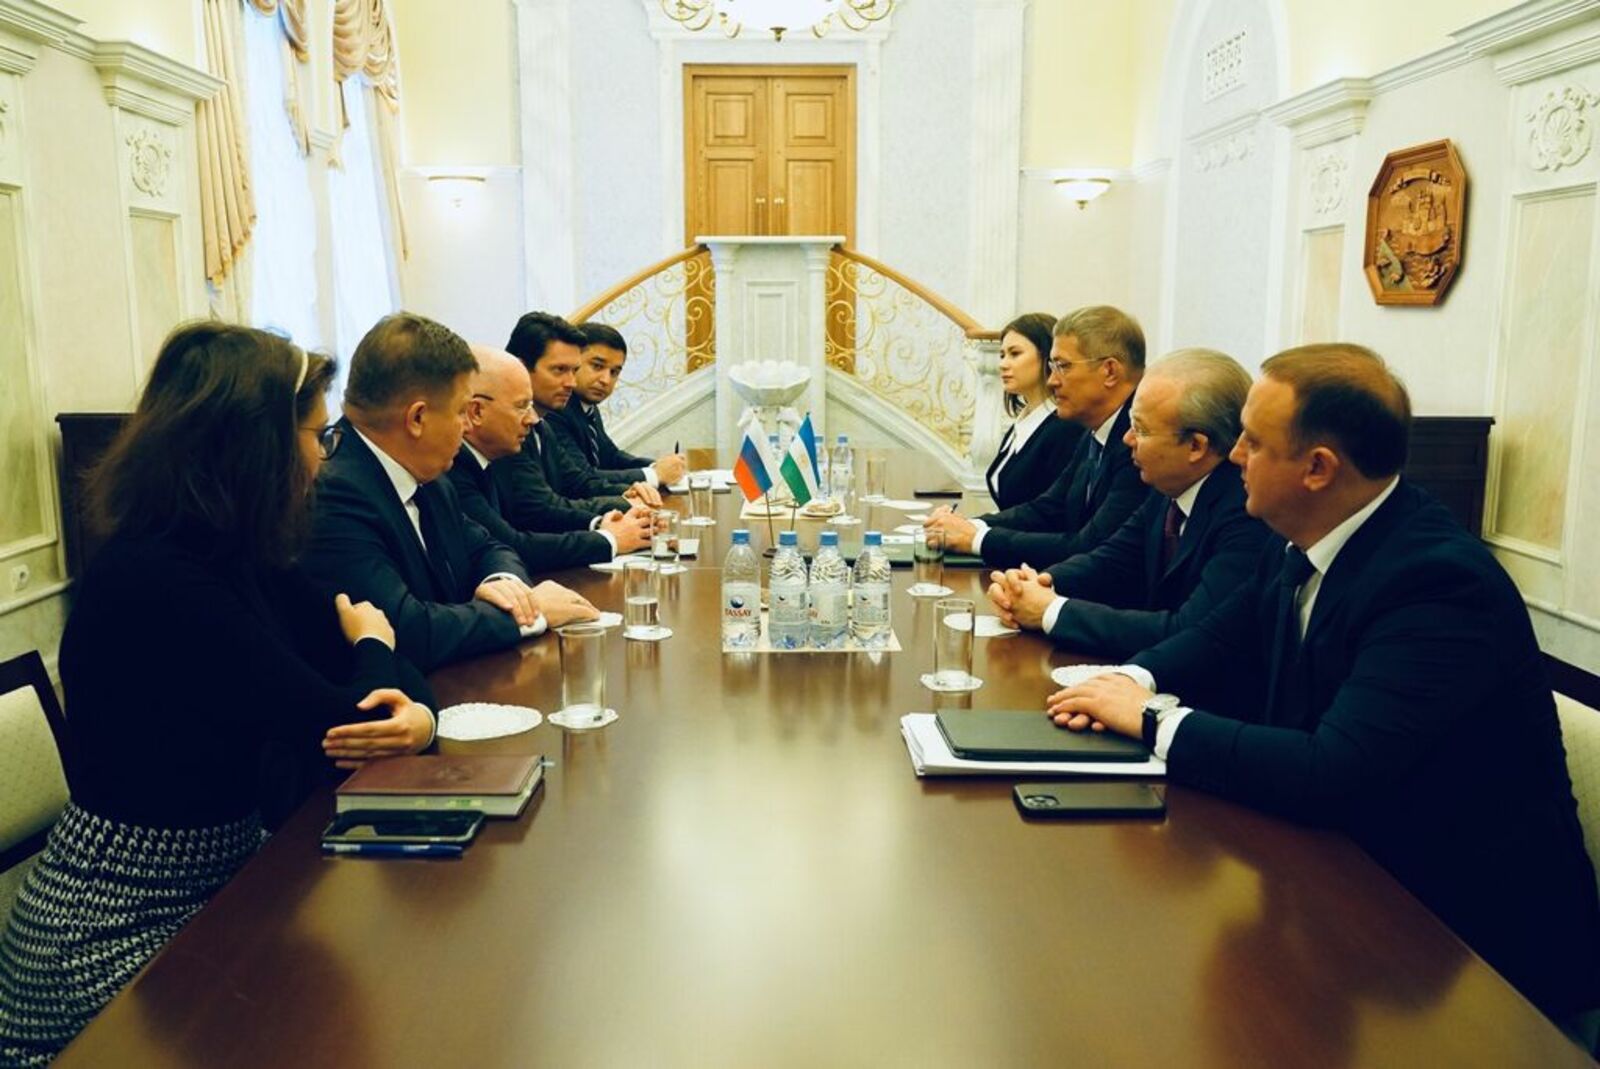 Глава башкирии встретился с временным поверенным в делах Посольства России в Казахстане